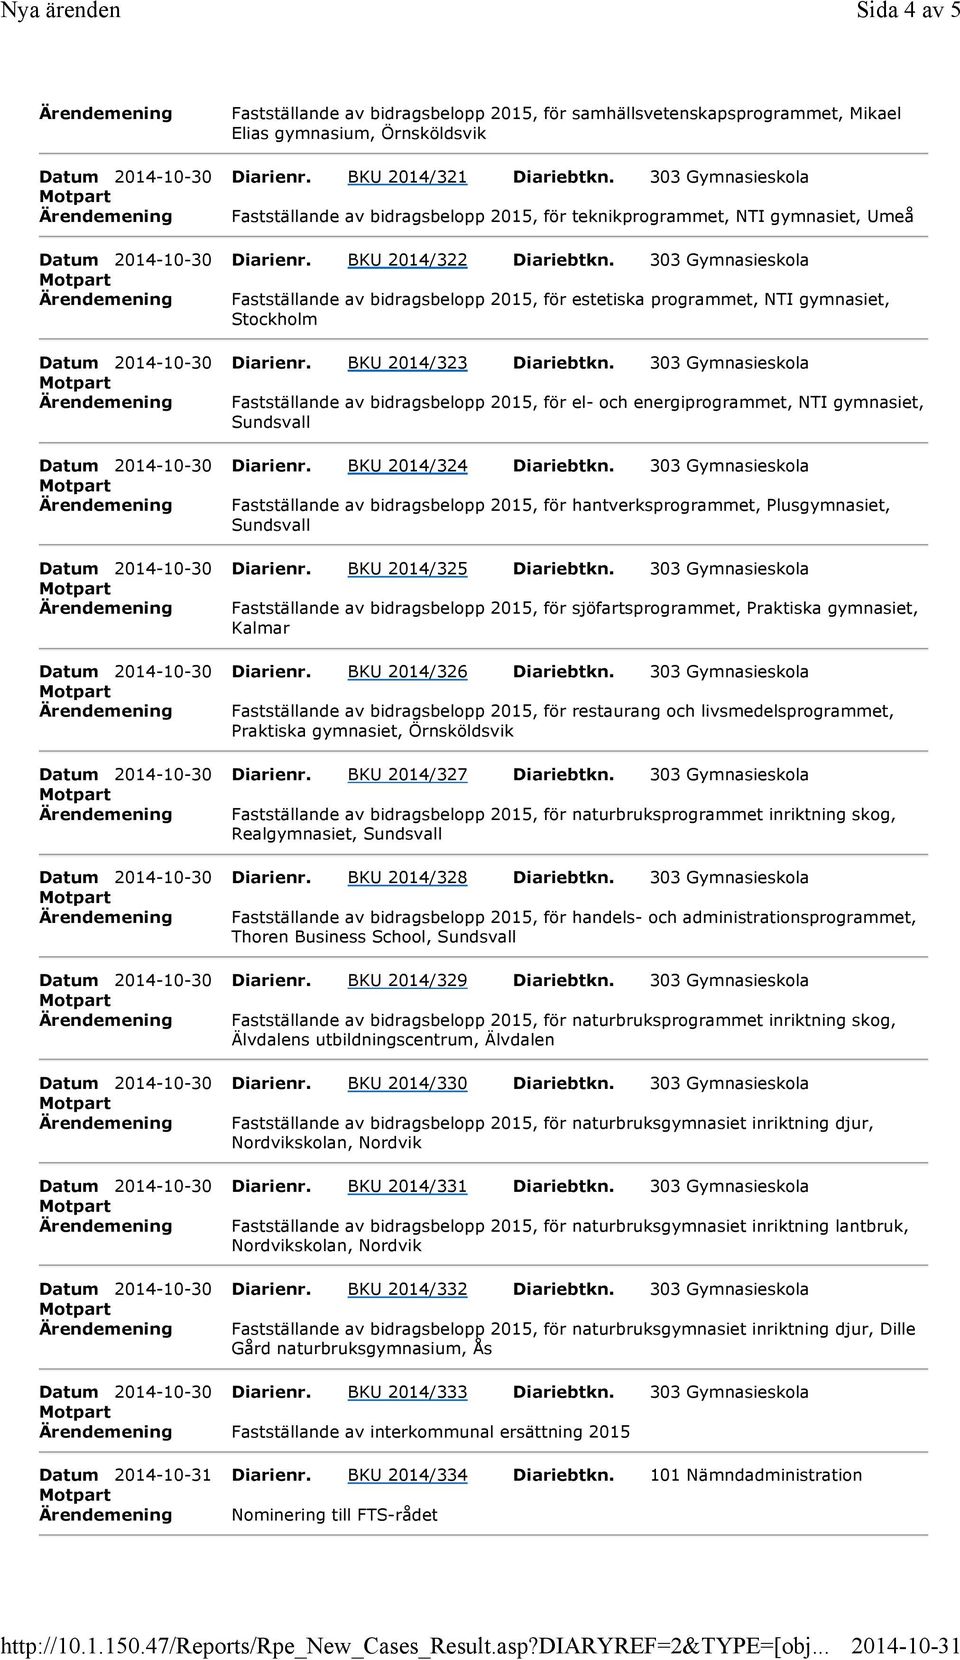 303 Gymnasieskola Ärendemening Fastställande av bidragsbelopp 2015, för estetiska programmet, NTI gymnasiet, Stockholm Datum 2014-10-30 Diarienr. BKU 2014/323 Diariebtkn.